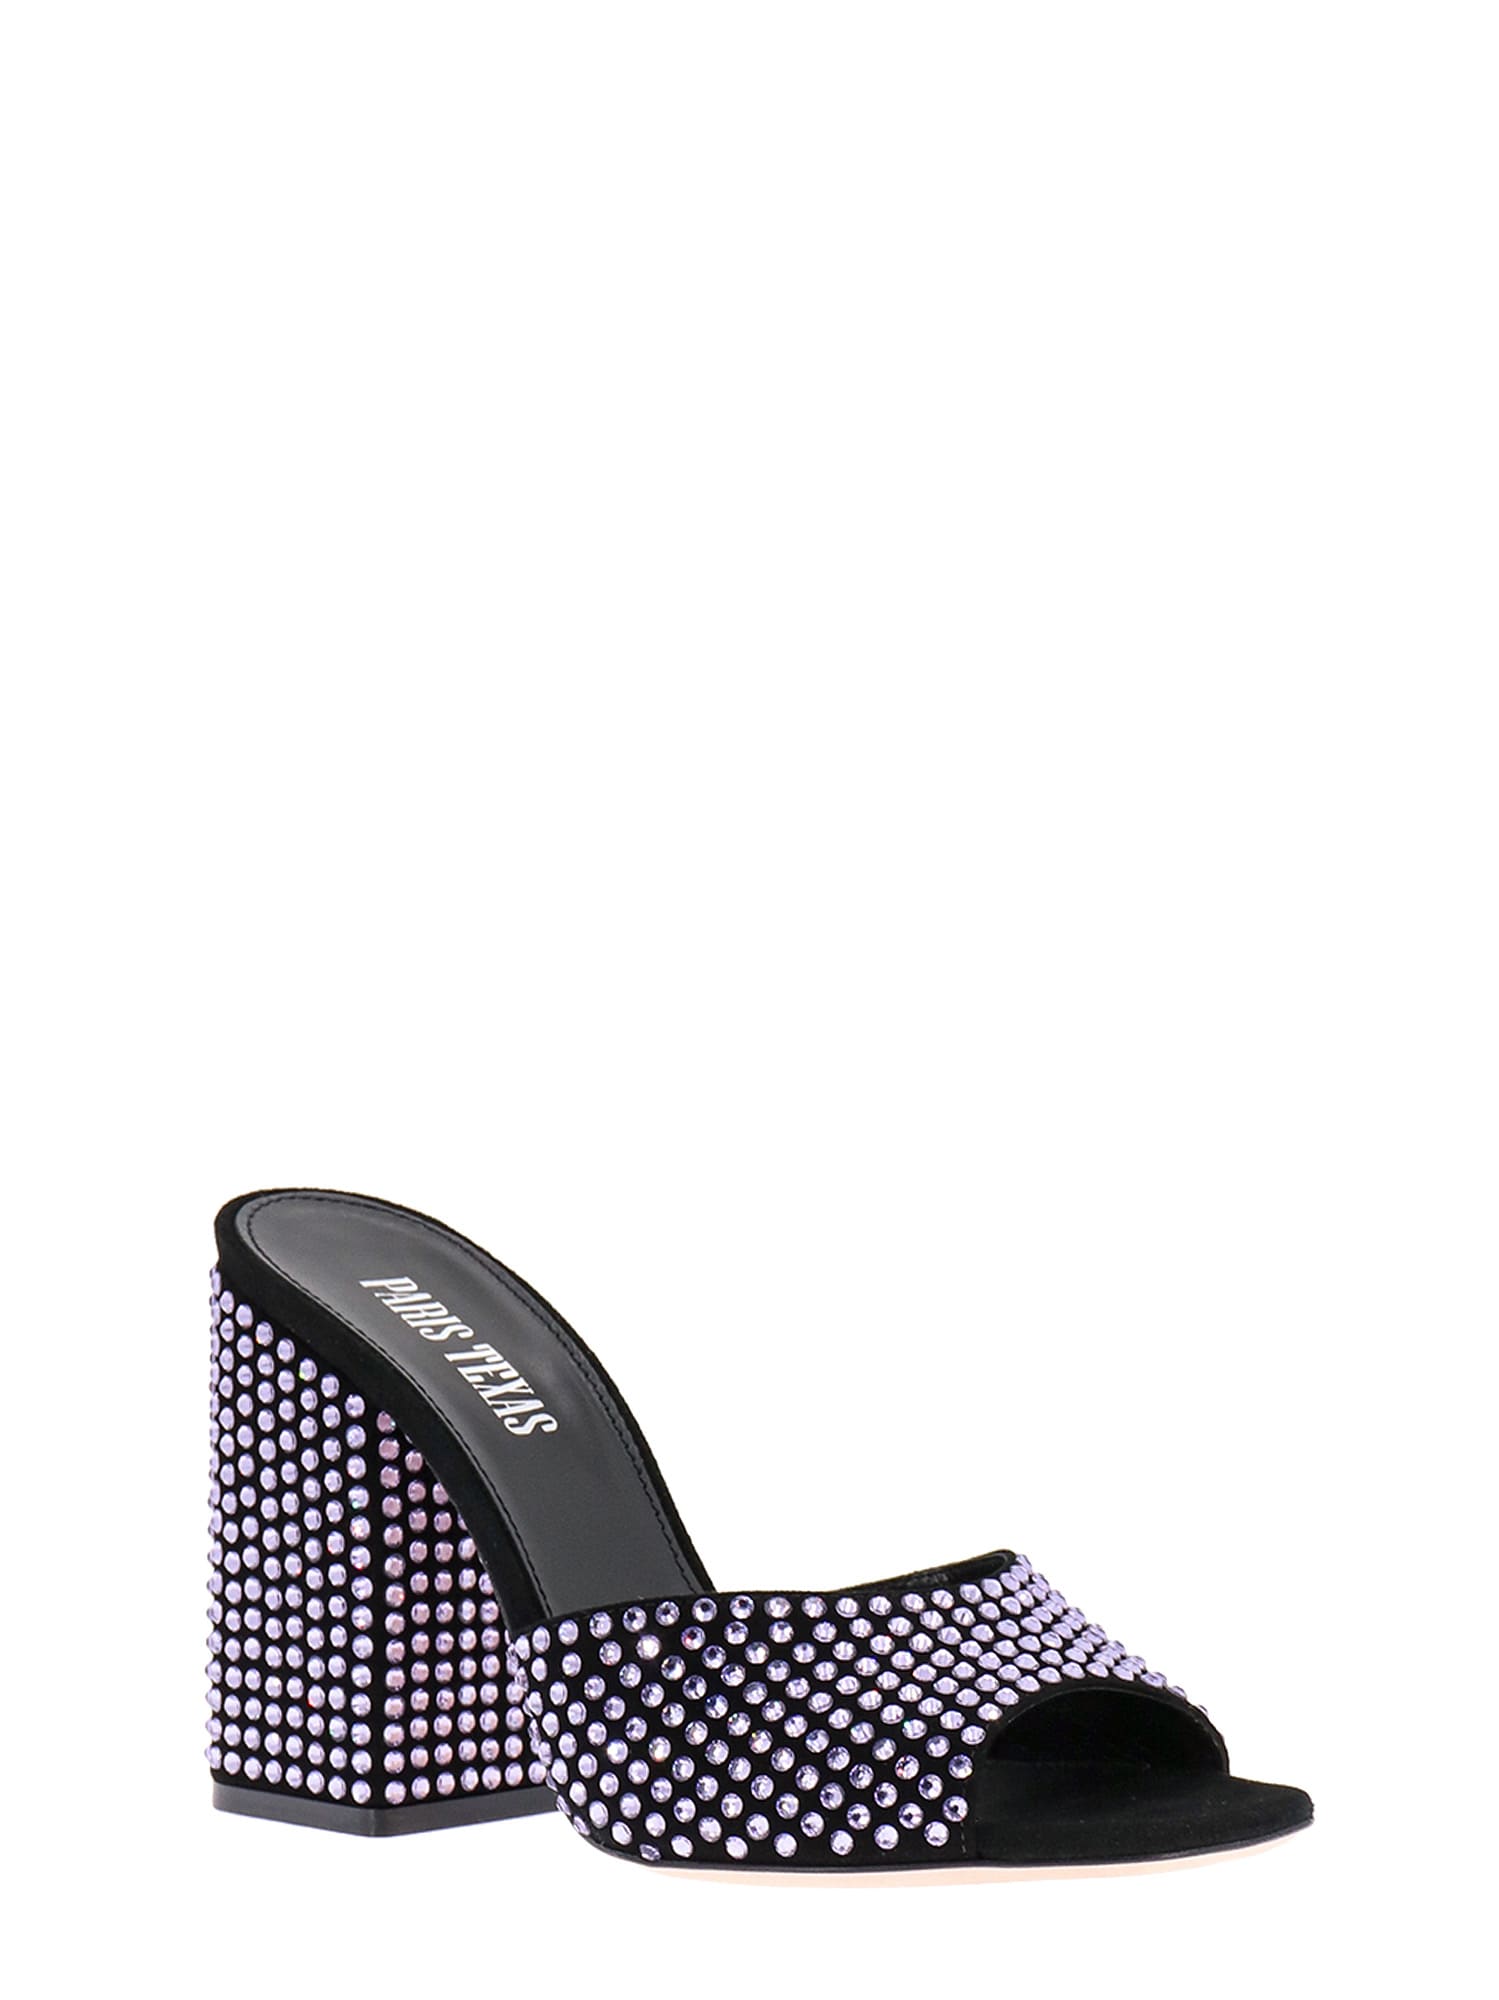 Shop Paris Texas Sandals In Black/purple